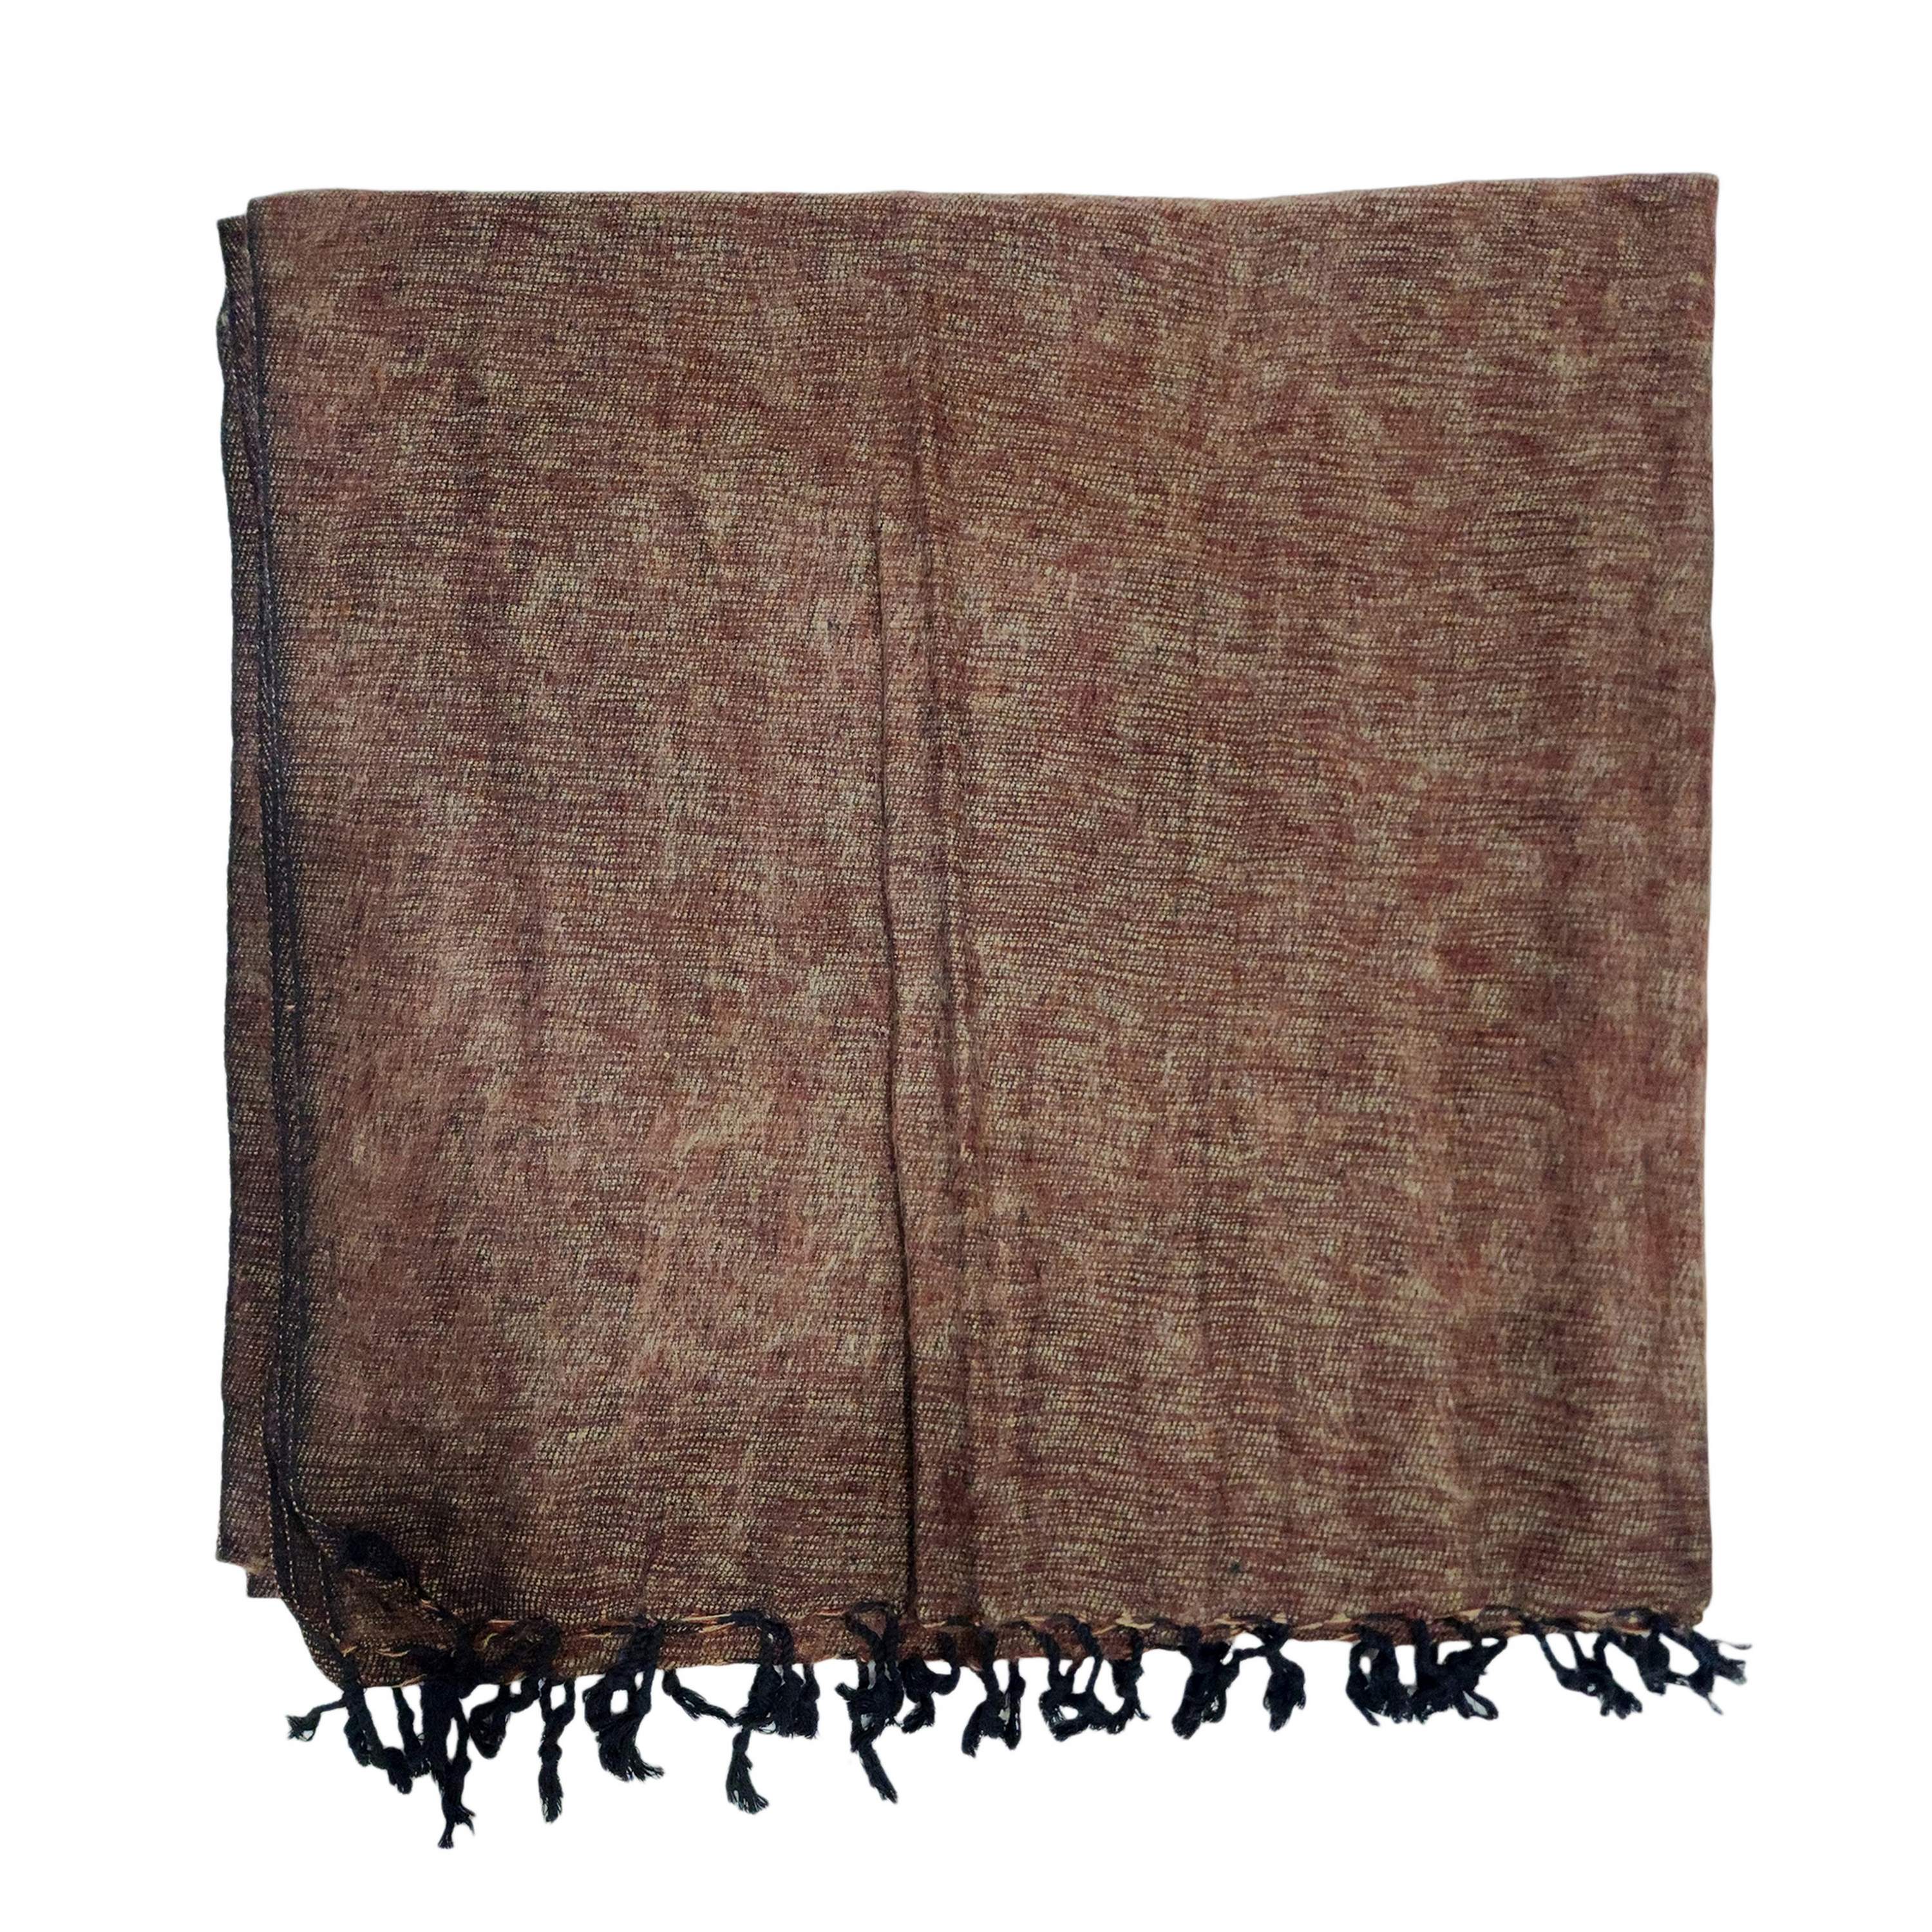 Yak Wool Blanket, Nepali Acrylic Hand Loom Blanket, Color coffee Brown